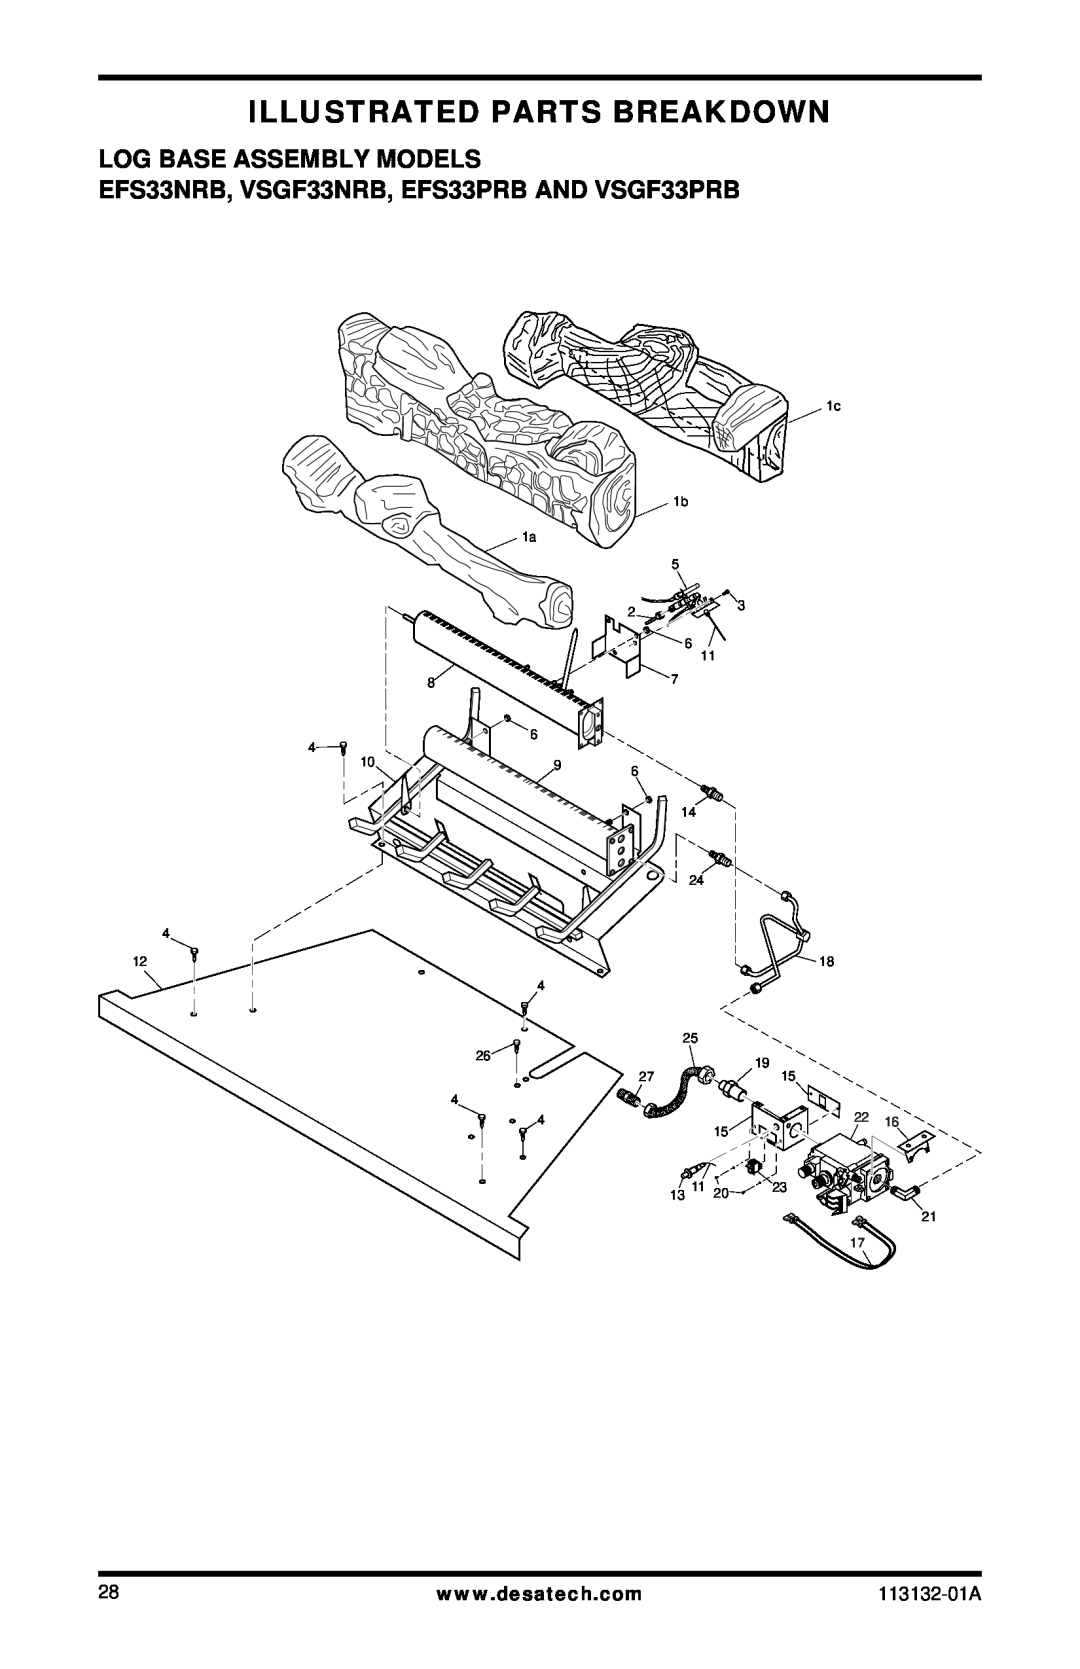 Desa Illustrated Parts Breakdown, Log Base Assembly Models, EFS33NRB, VSGF33NRB, EFS33PRB AND VSGF33PRB, 113132-01A 